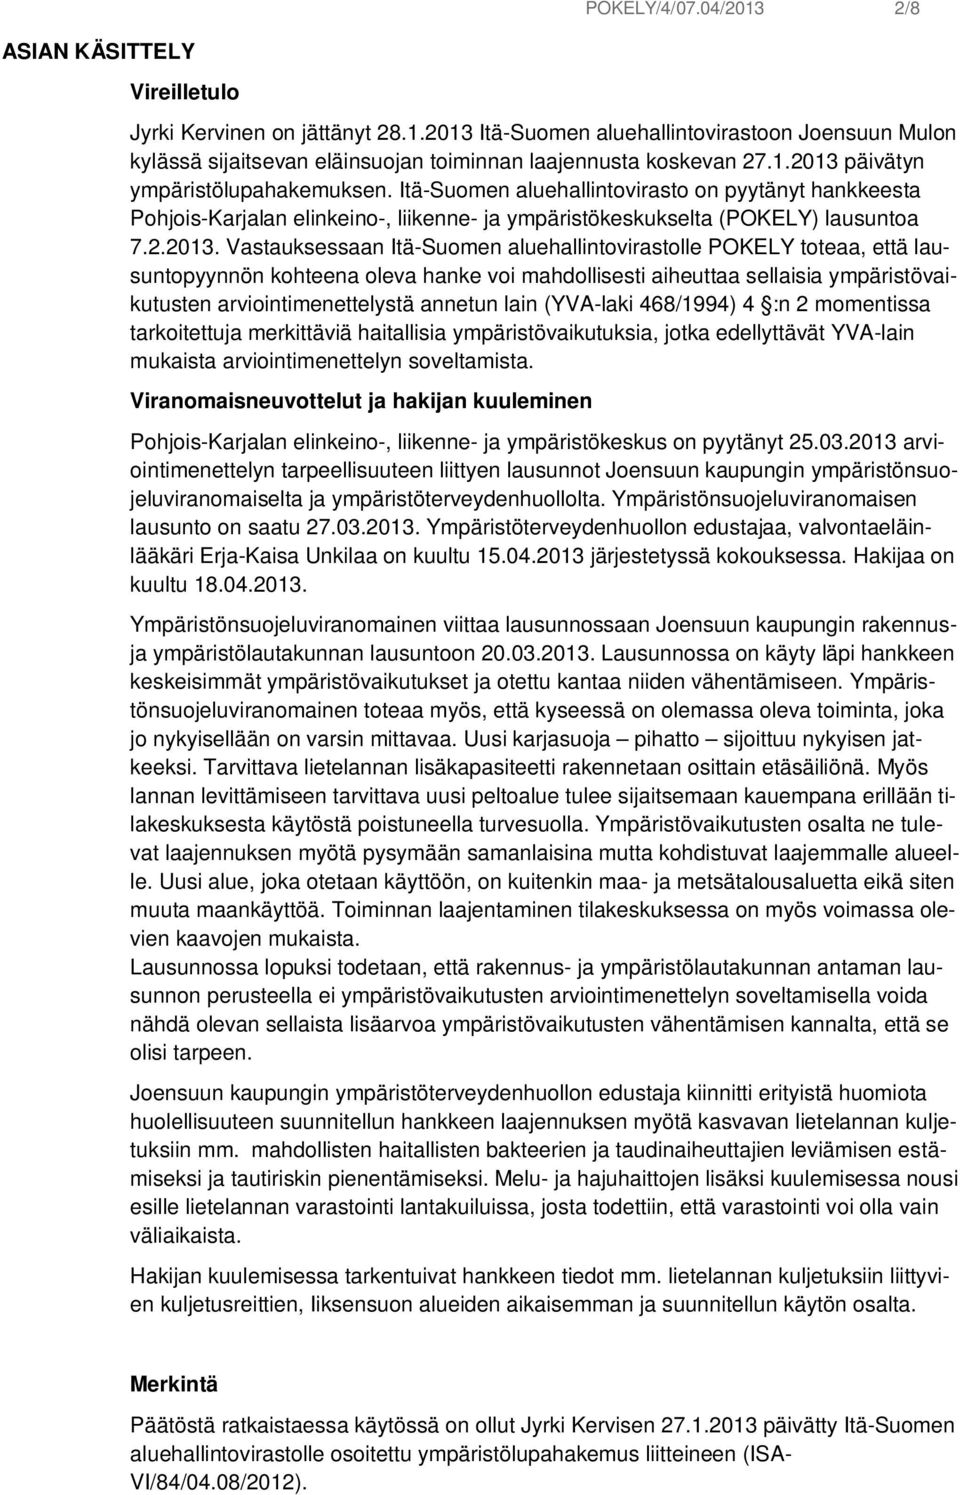 päivätyn ympäristölupahakemuksen. Itä-Suomen aluehallintovirasto on pyytänyt hankkeesta Pohjois-Karjalan elinkeino-, liikenne- ja ympäristökeskukselta (POKELY) lausuntoa 7.2.2013.